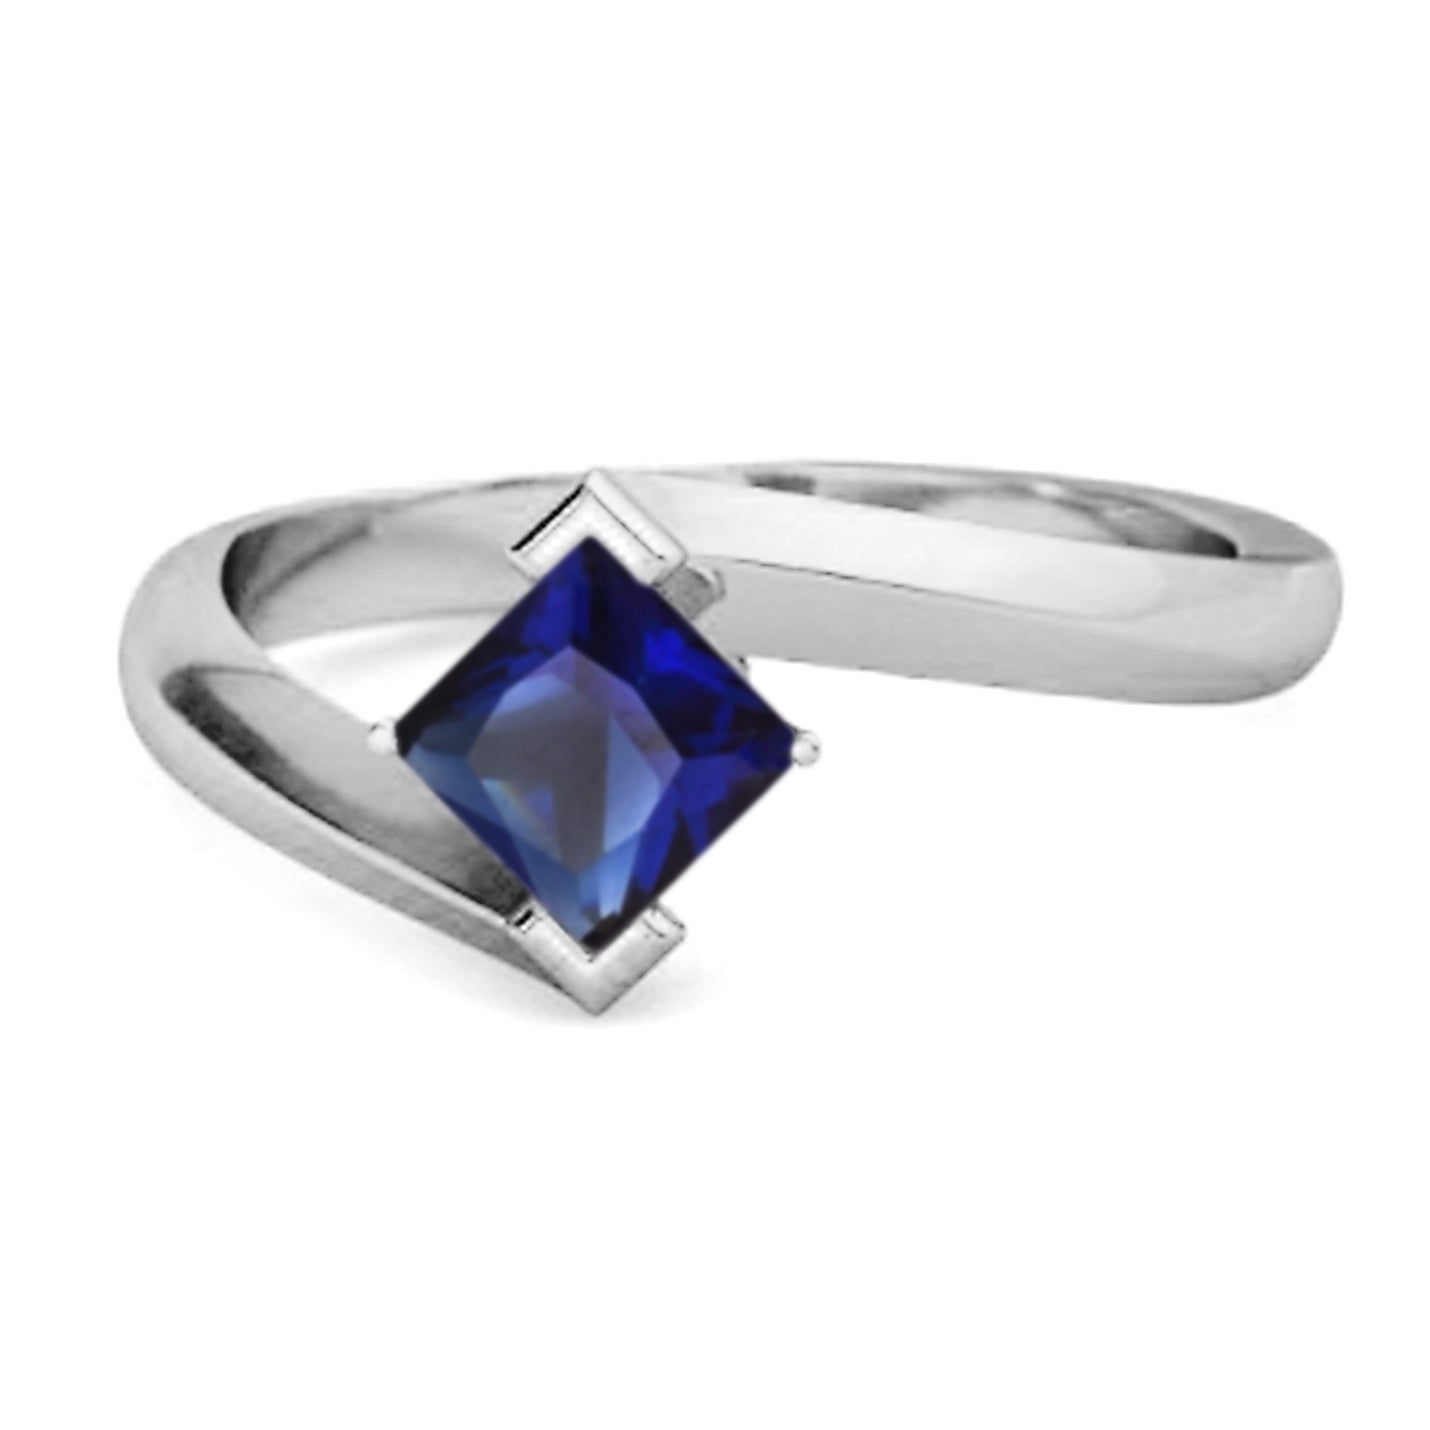 Blue Sapphire gold rings for women | Neela kal mothiram | lucky stone rings  - YouTube